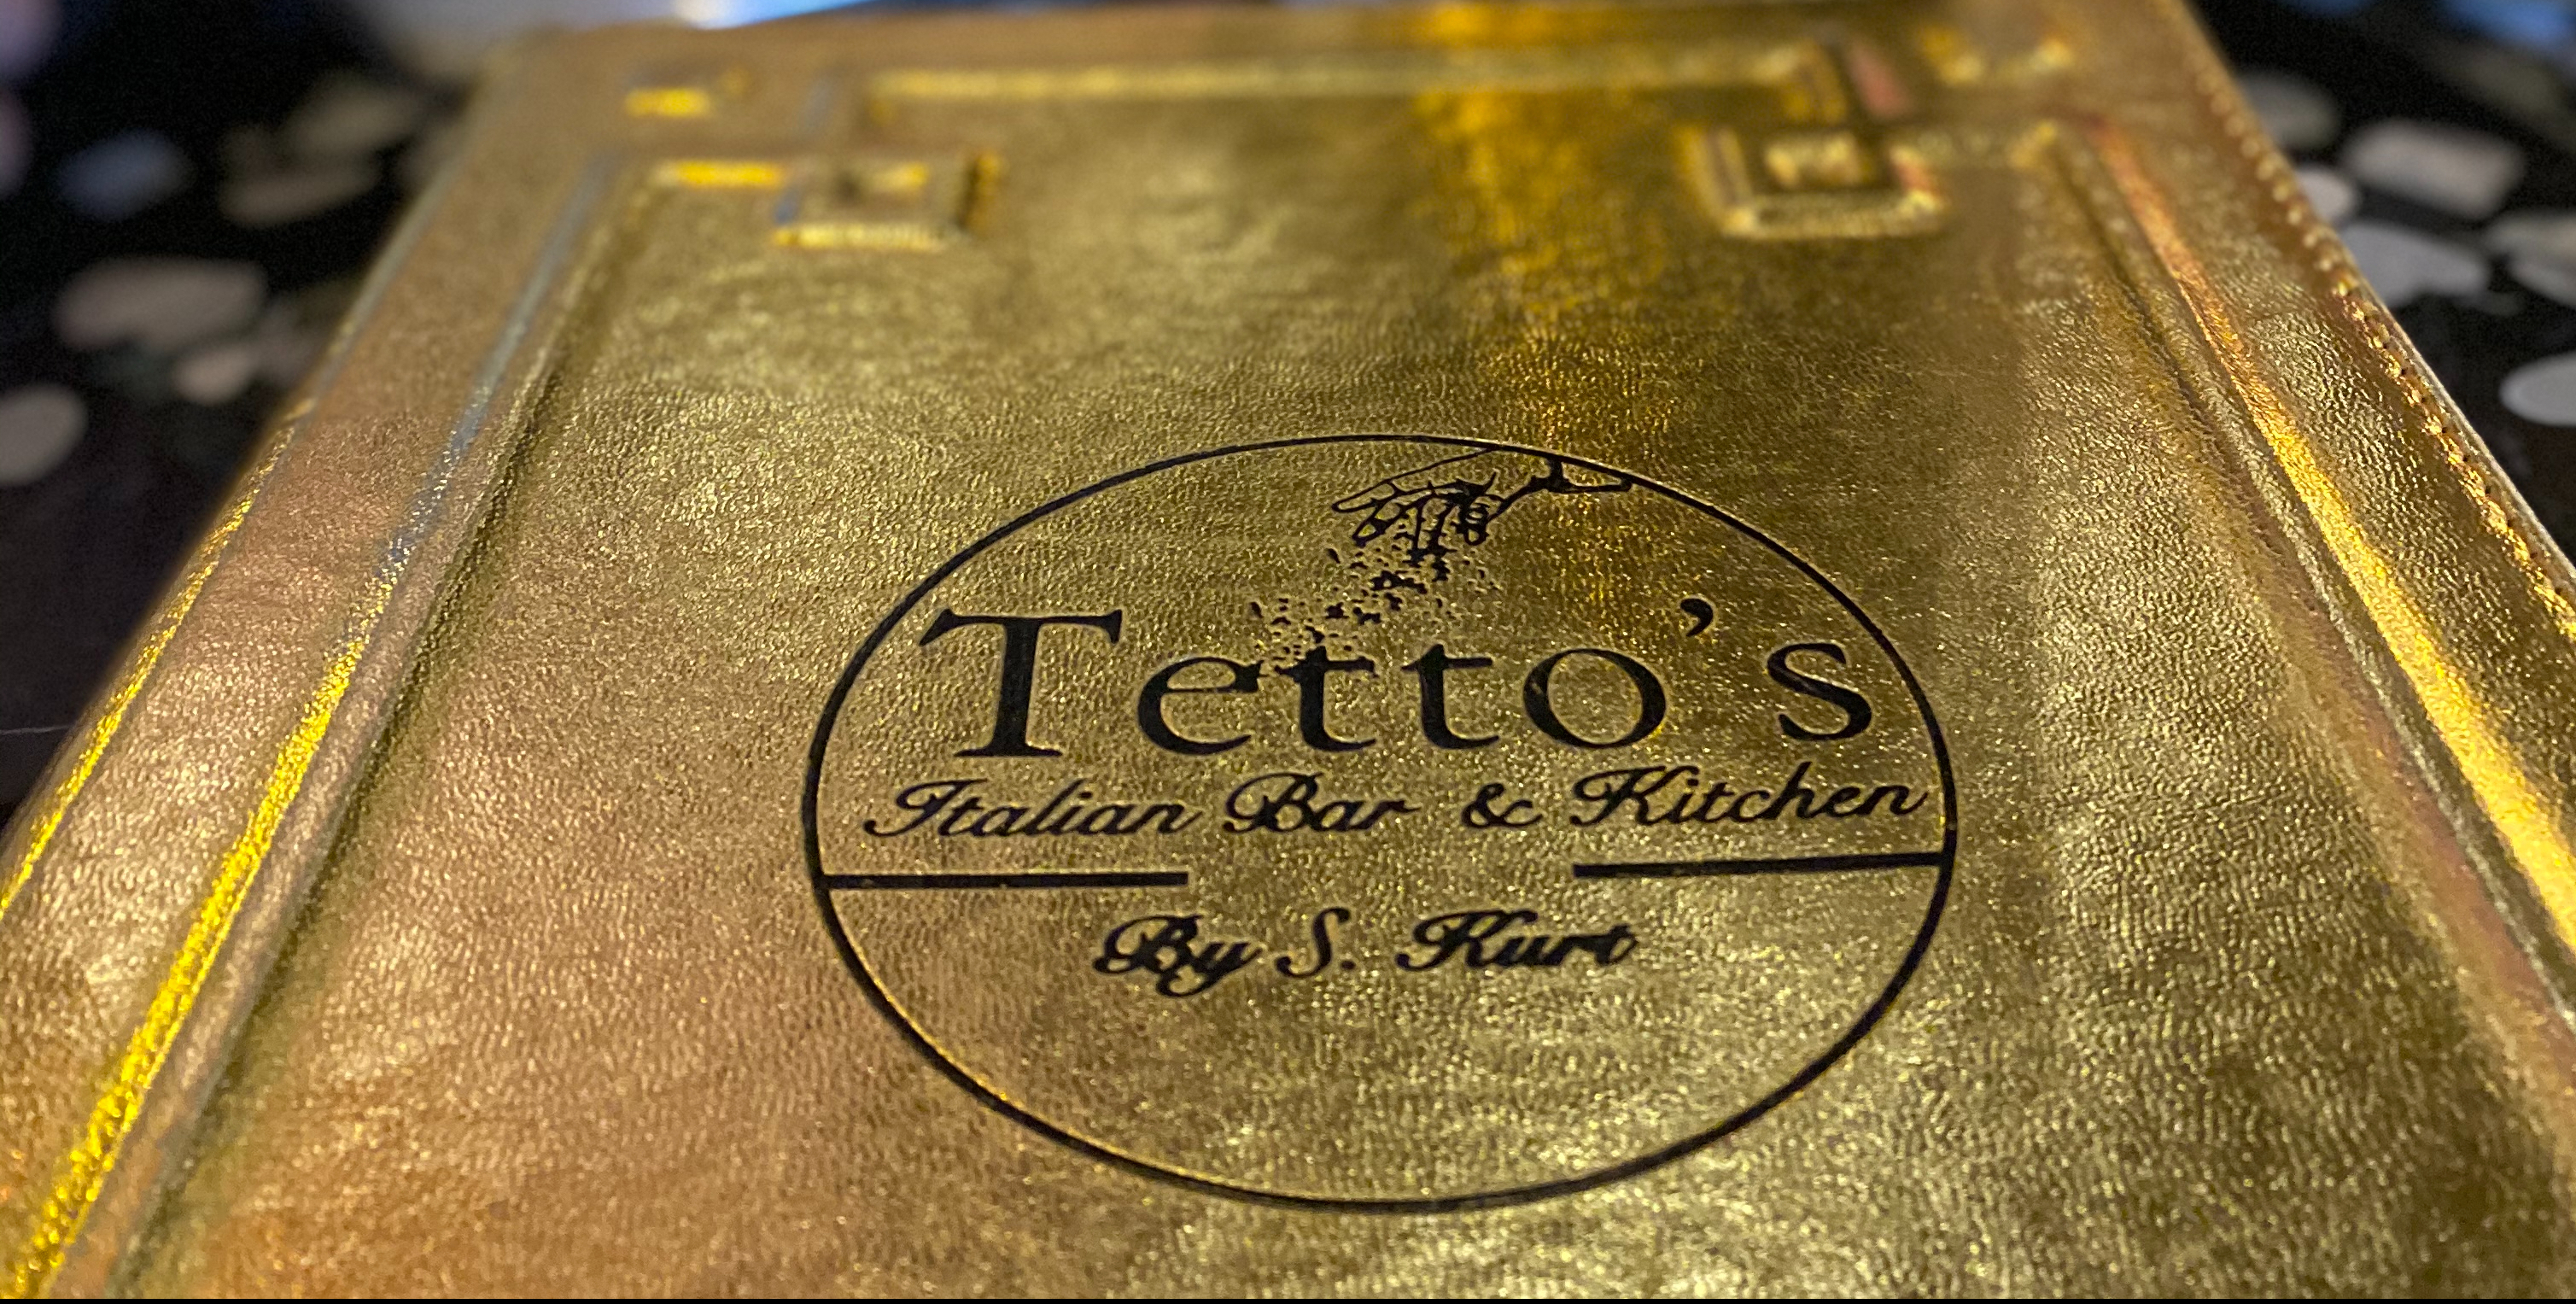 Tetto’s Italian Kitchen & Bar